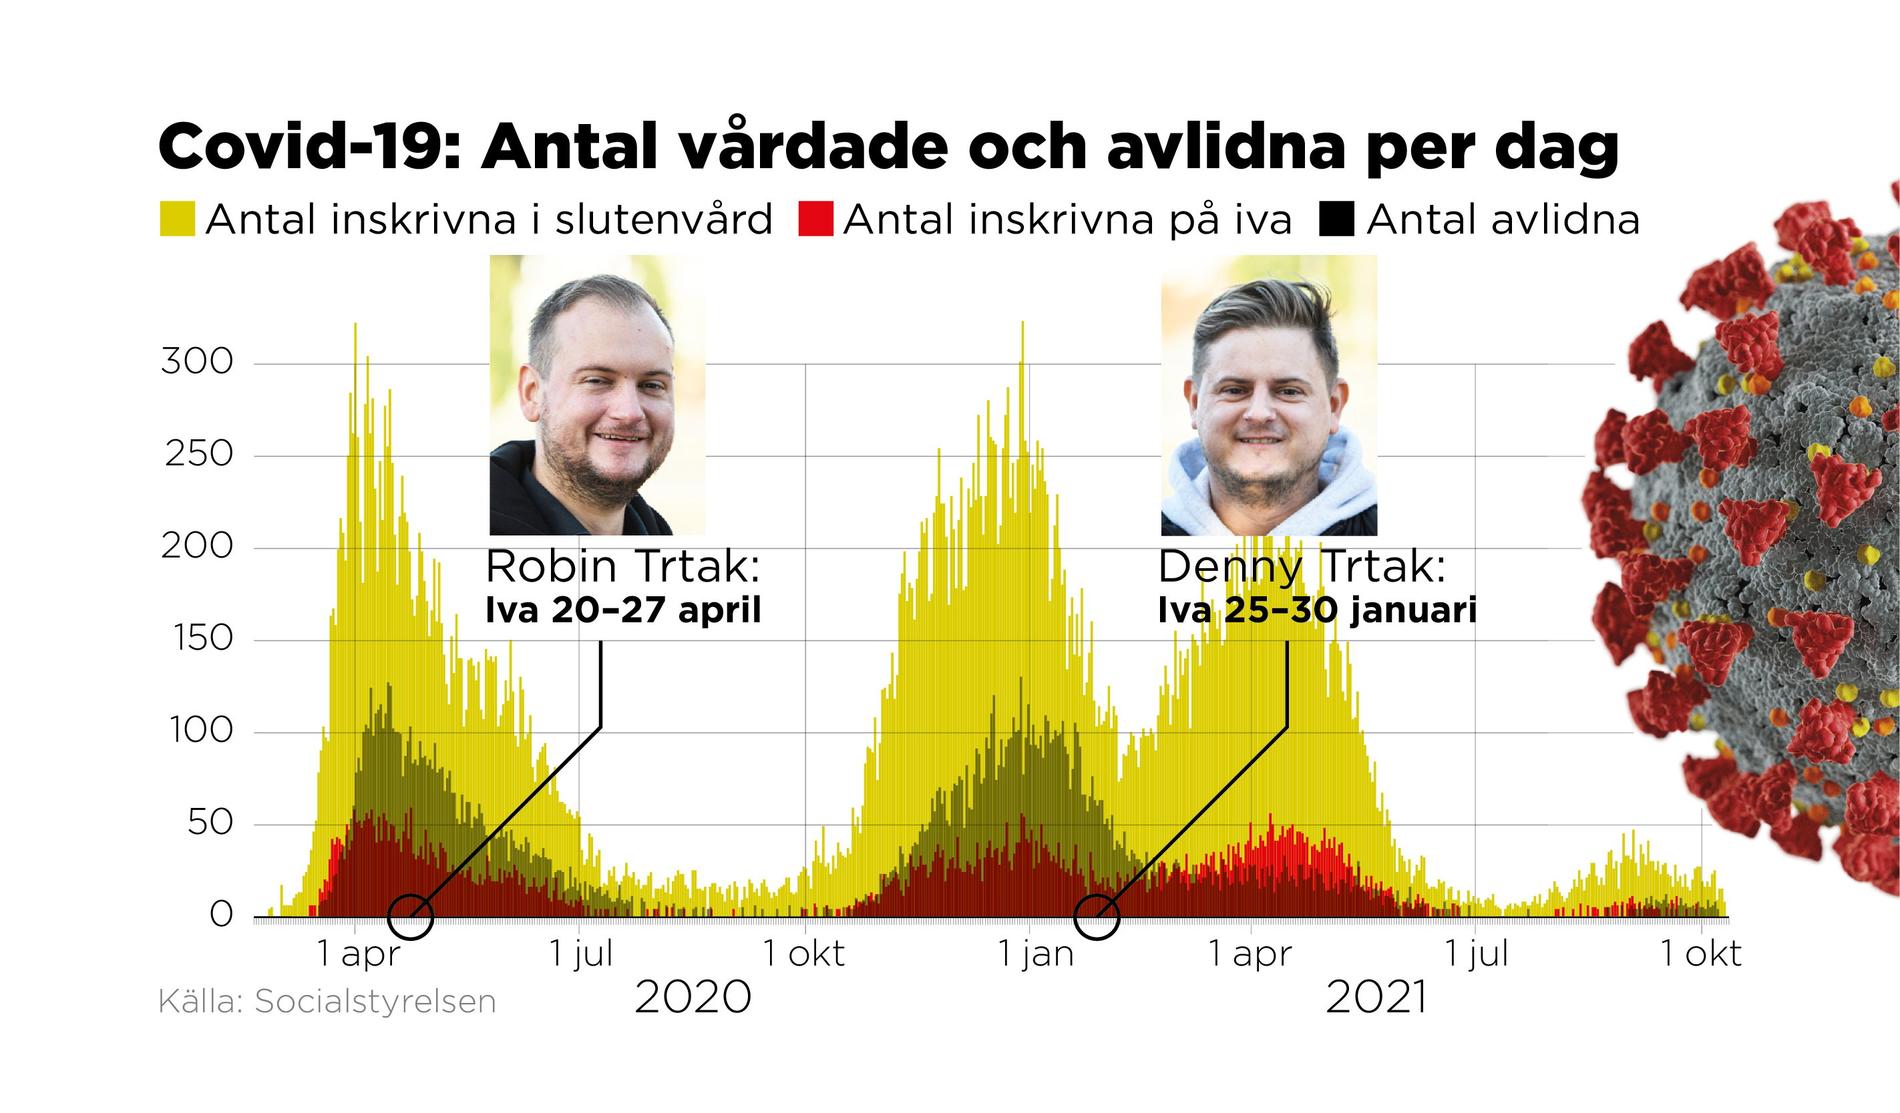 Robin och Denny Trtak är två av alla människor bakom statistiken över hur svenskar drabbats av covid-19. Storebror Robin Trtak intensivvårdades i april 2020 och lillebror Denny Trtak i januari 2021.